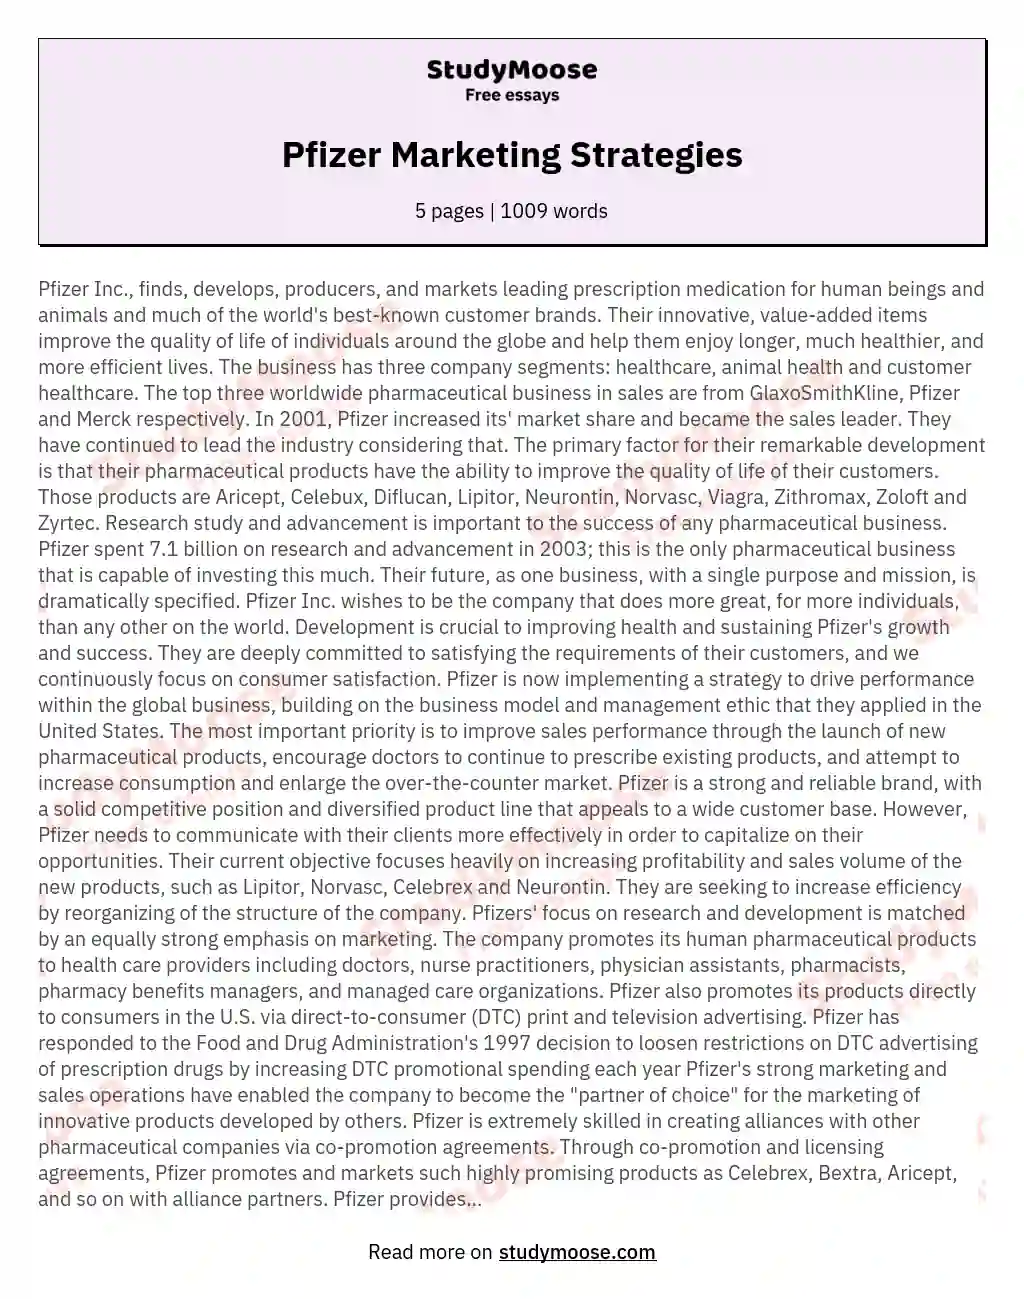 Pfizer Marketing Strategies essay